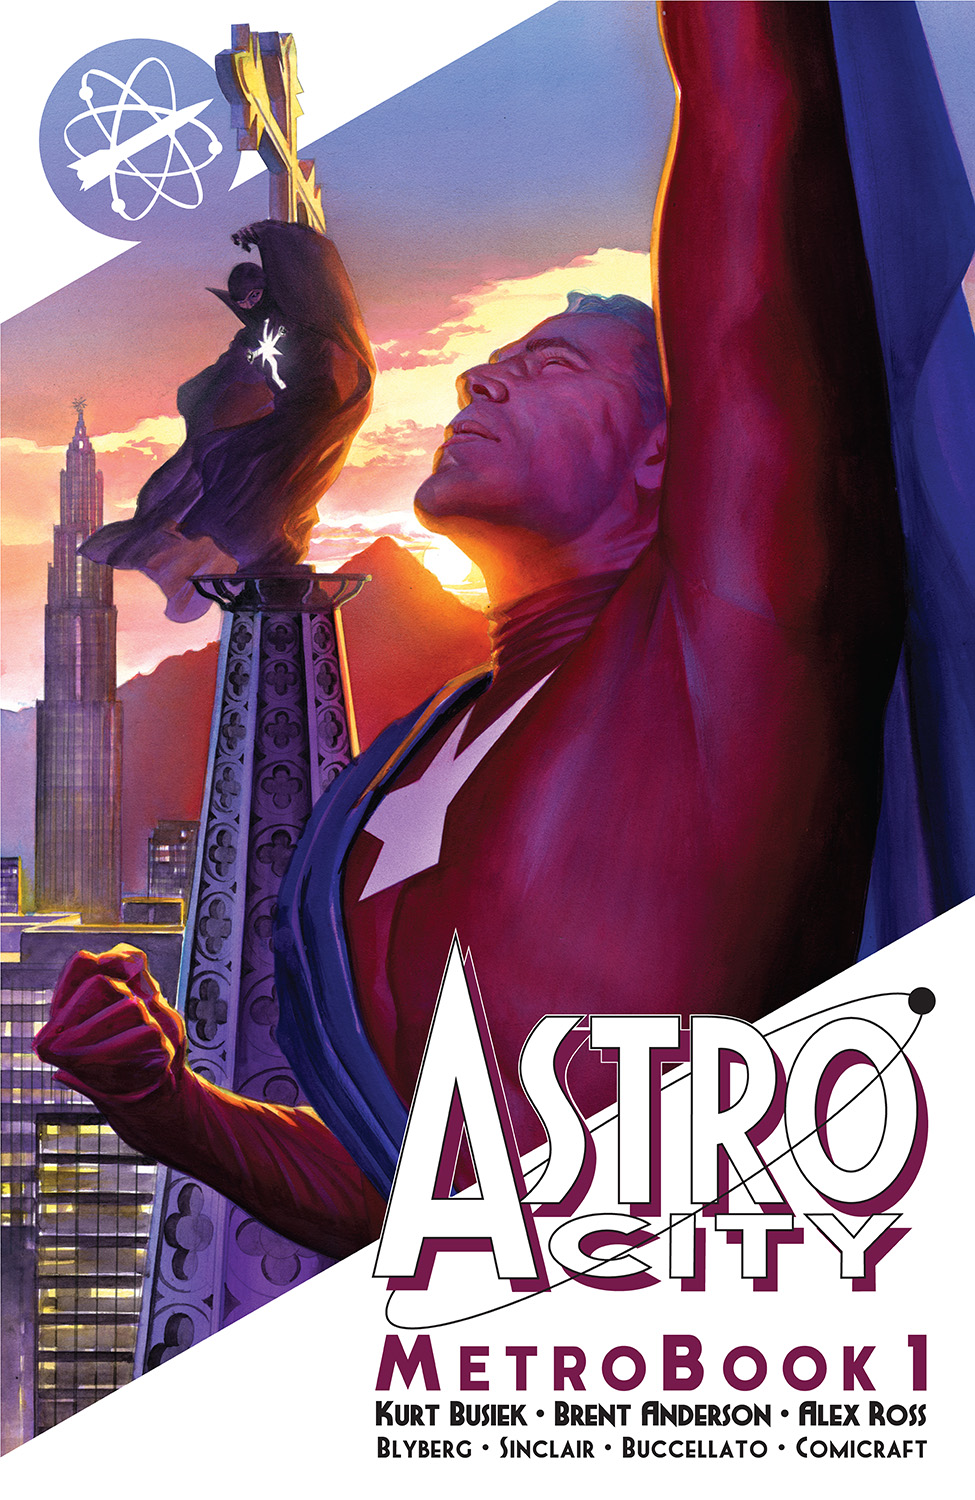 Astro City Metrobook Graphic Novel Volume 1